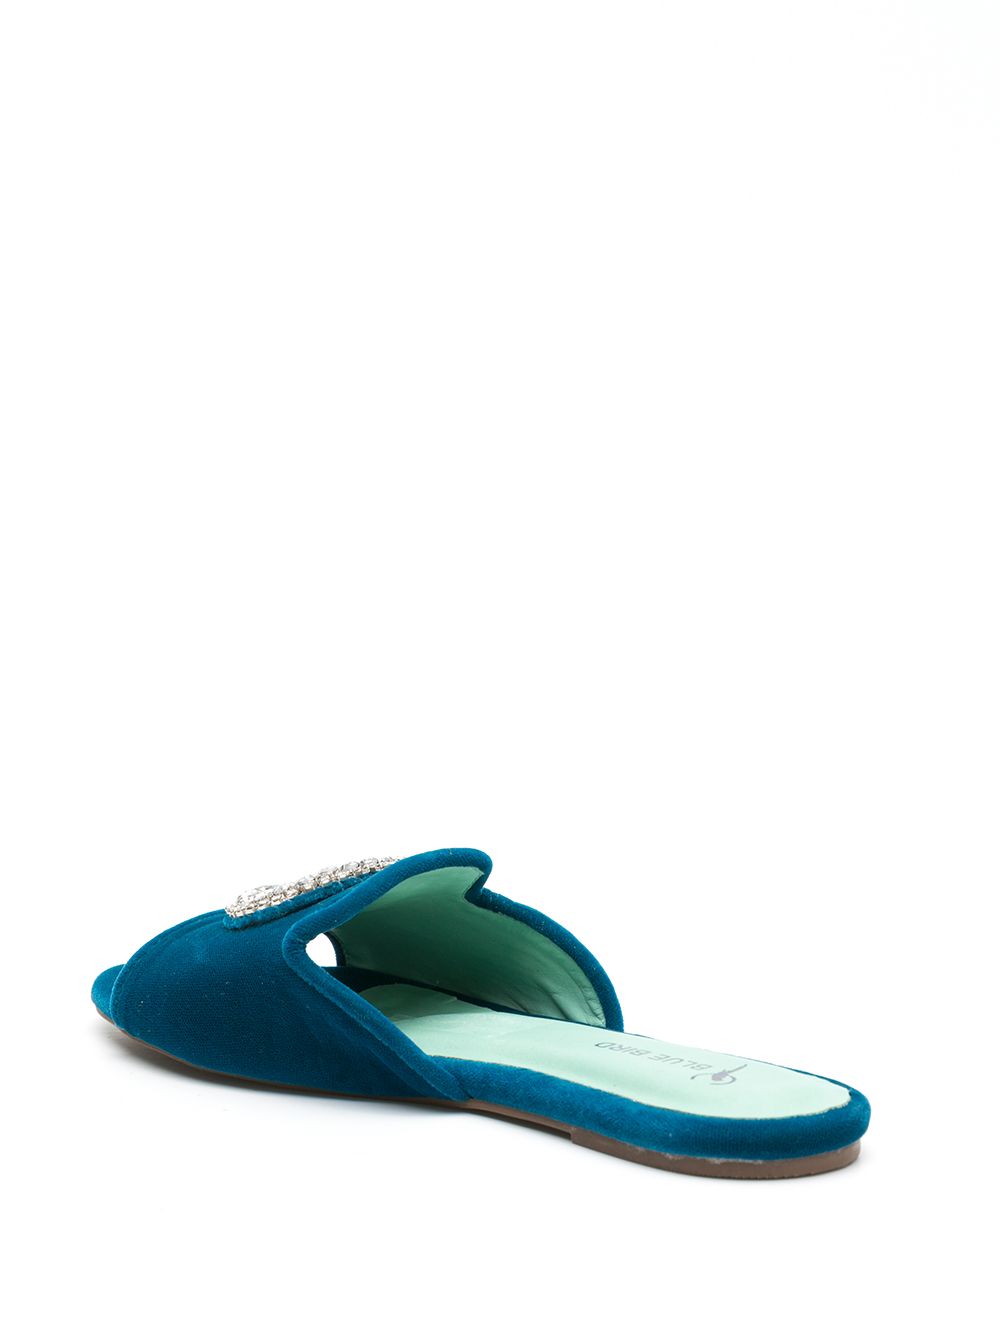 фото Blue bird shoes декорированные сандалии